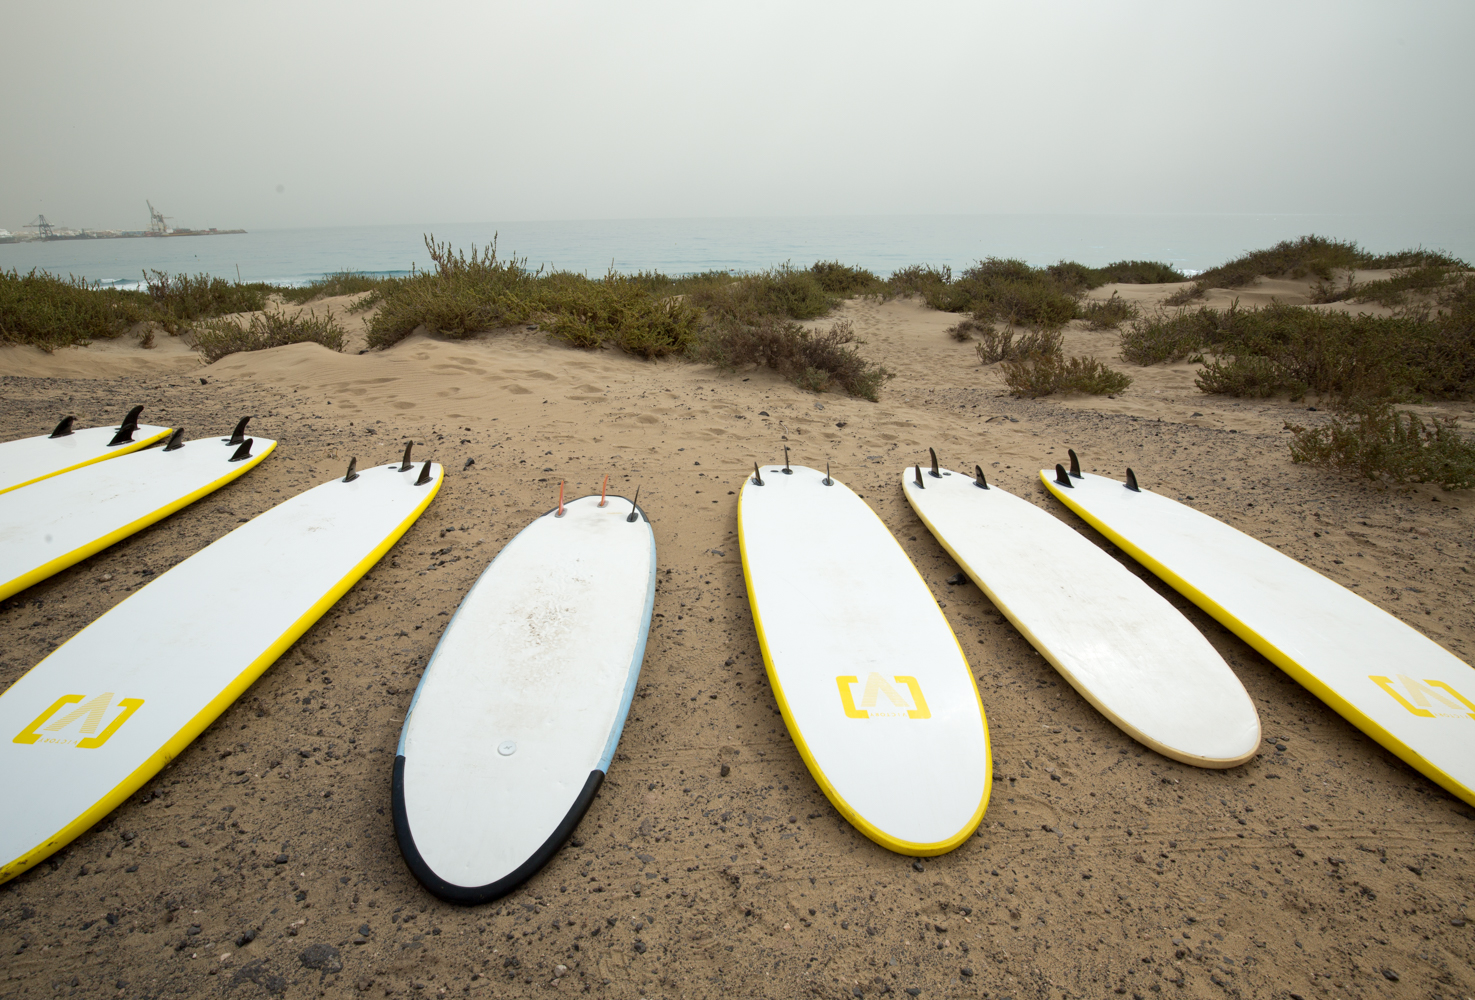 Surf boards for lesson at Playa Blanca, Fuerteventura